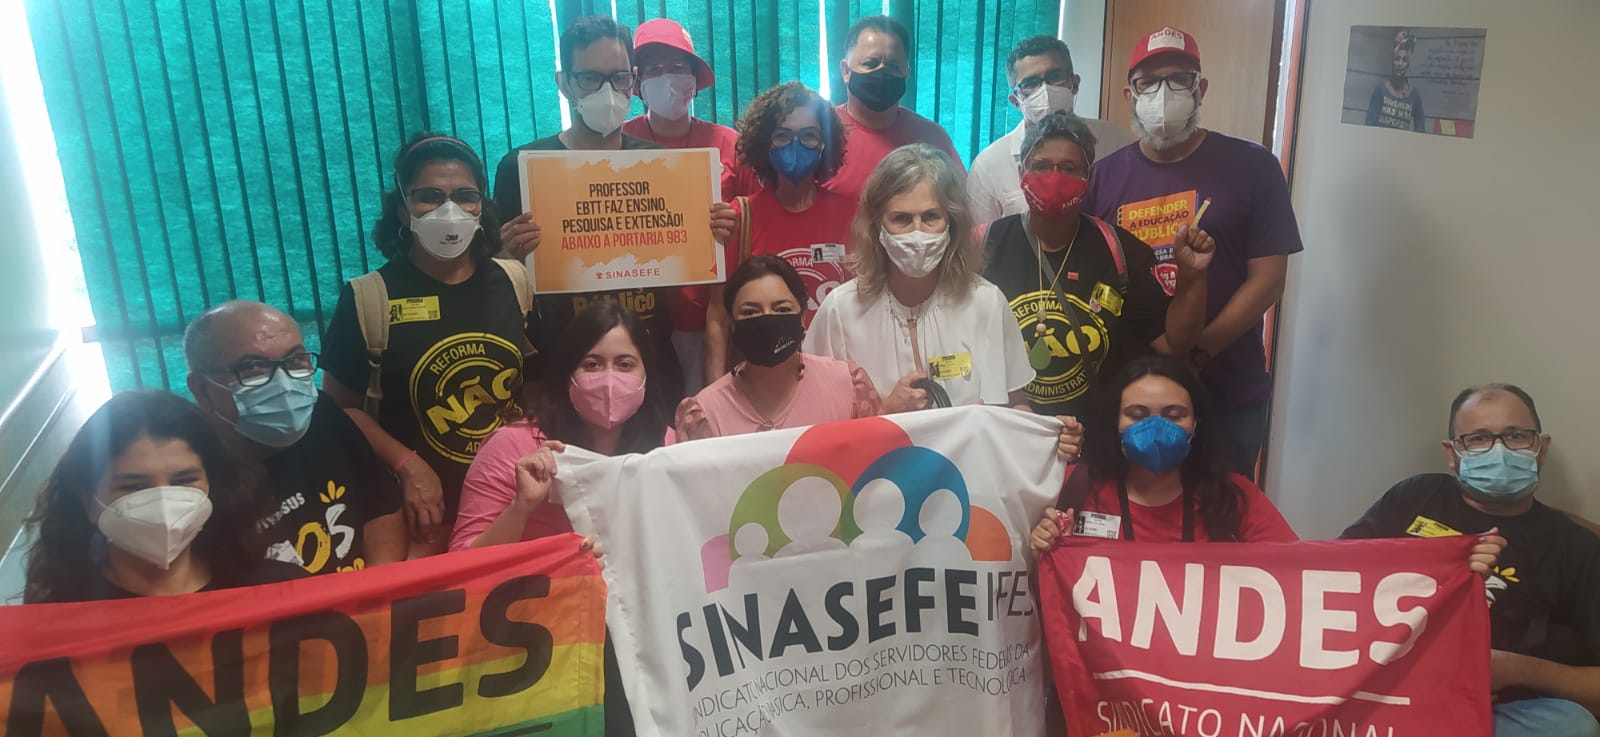 Sâmia se reúne com Andes e Sinasefe para discutir ataques aos Institutos Federais